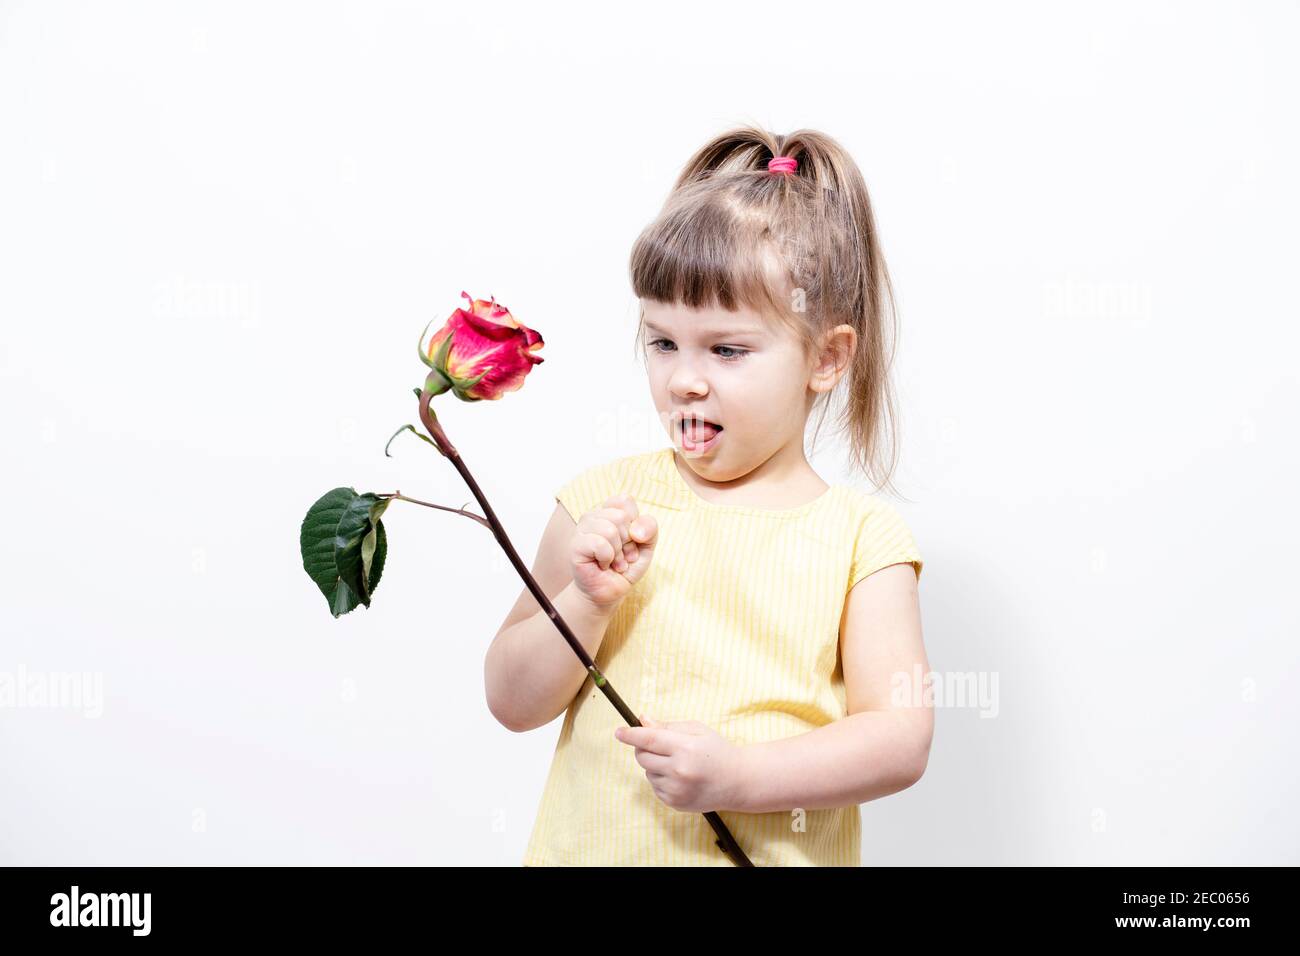 la bambina di 4-5 anni tiene una rosa appassita nelle mani, il bambino non è felice e indignato. bocca aperta Foto Stock